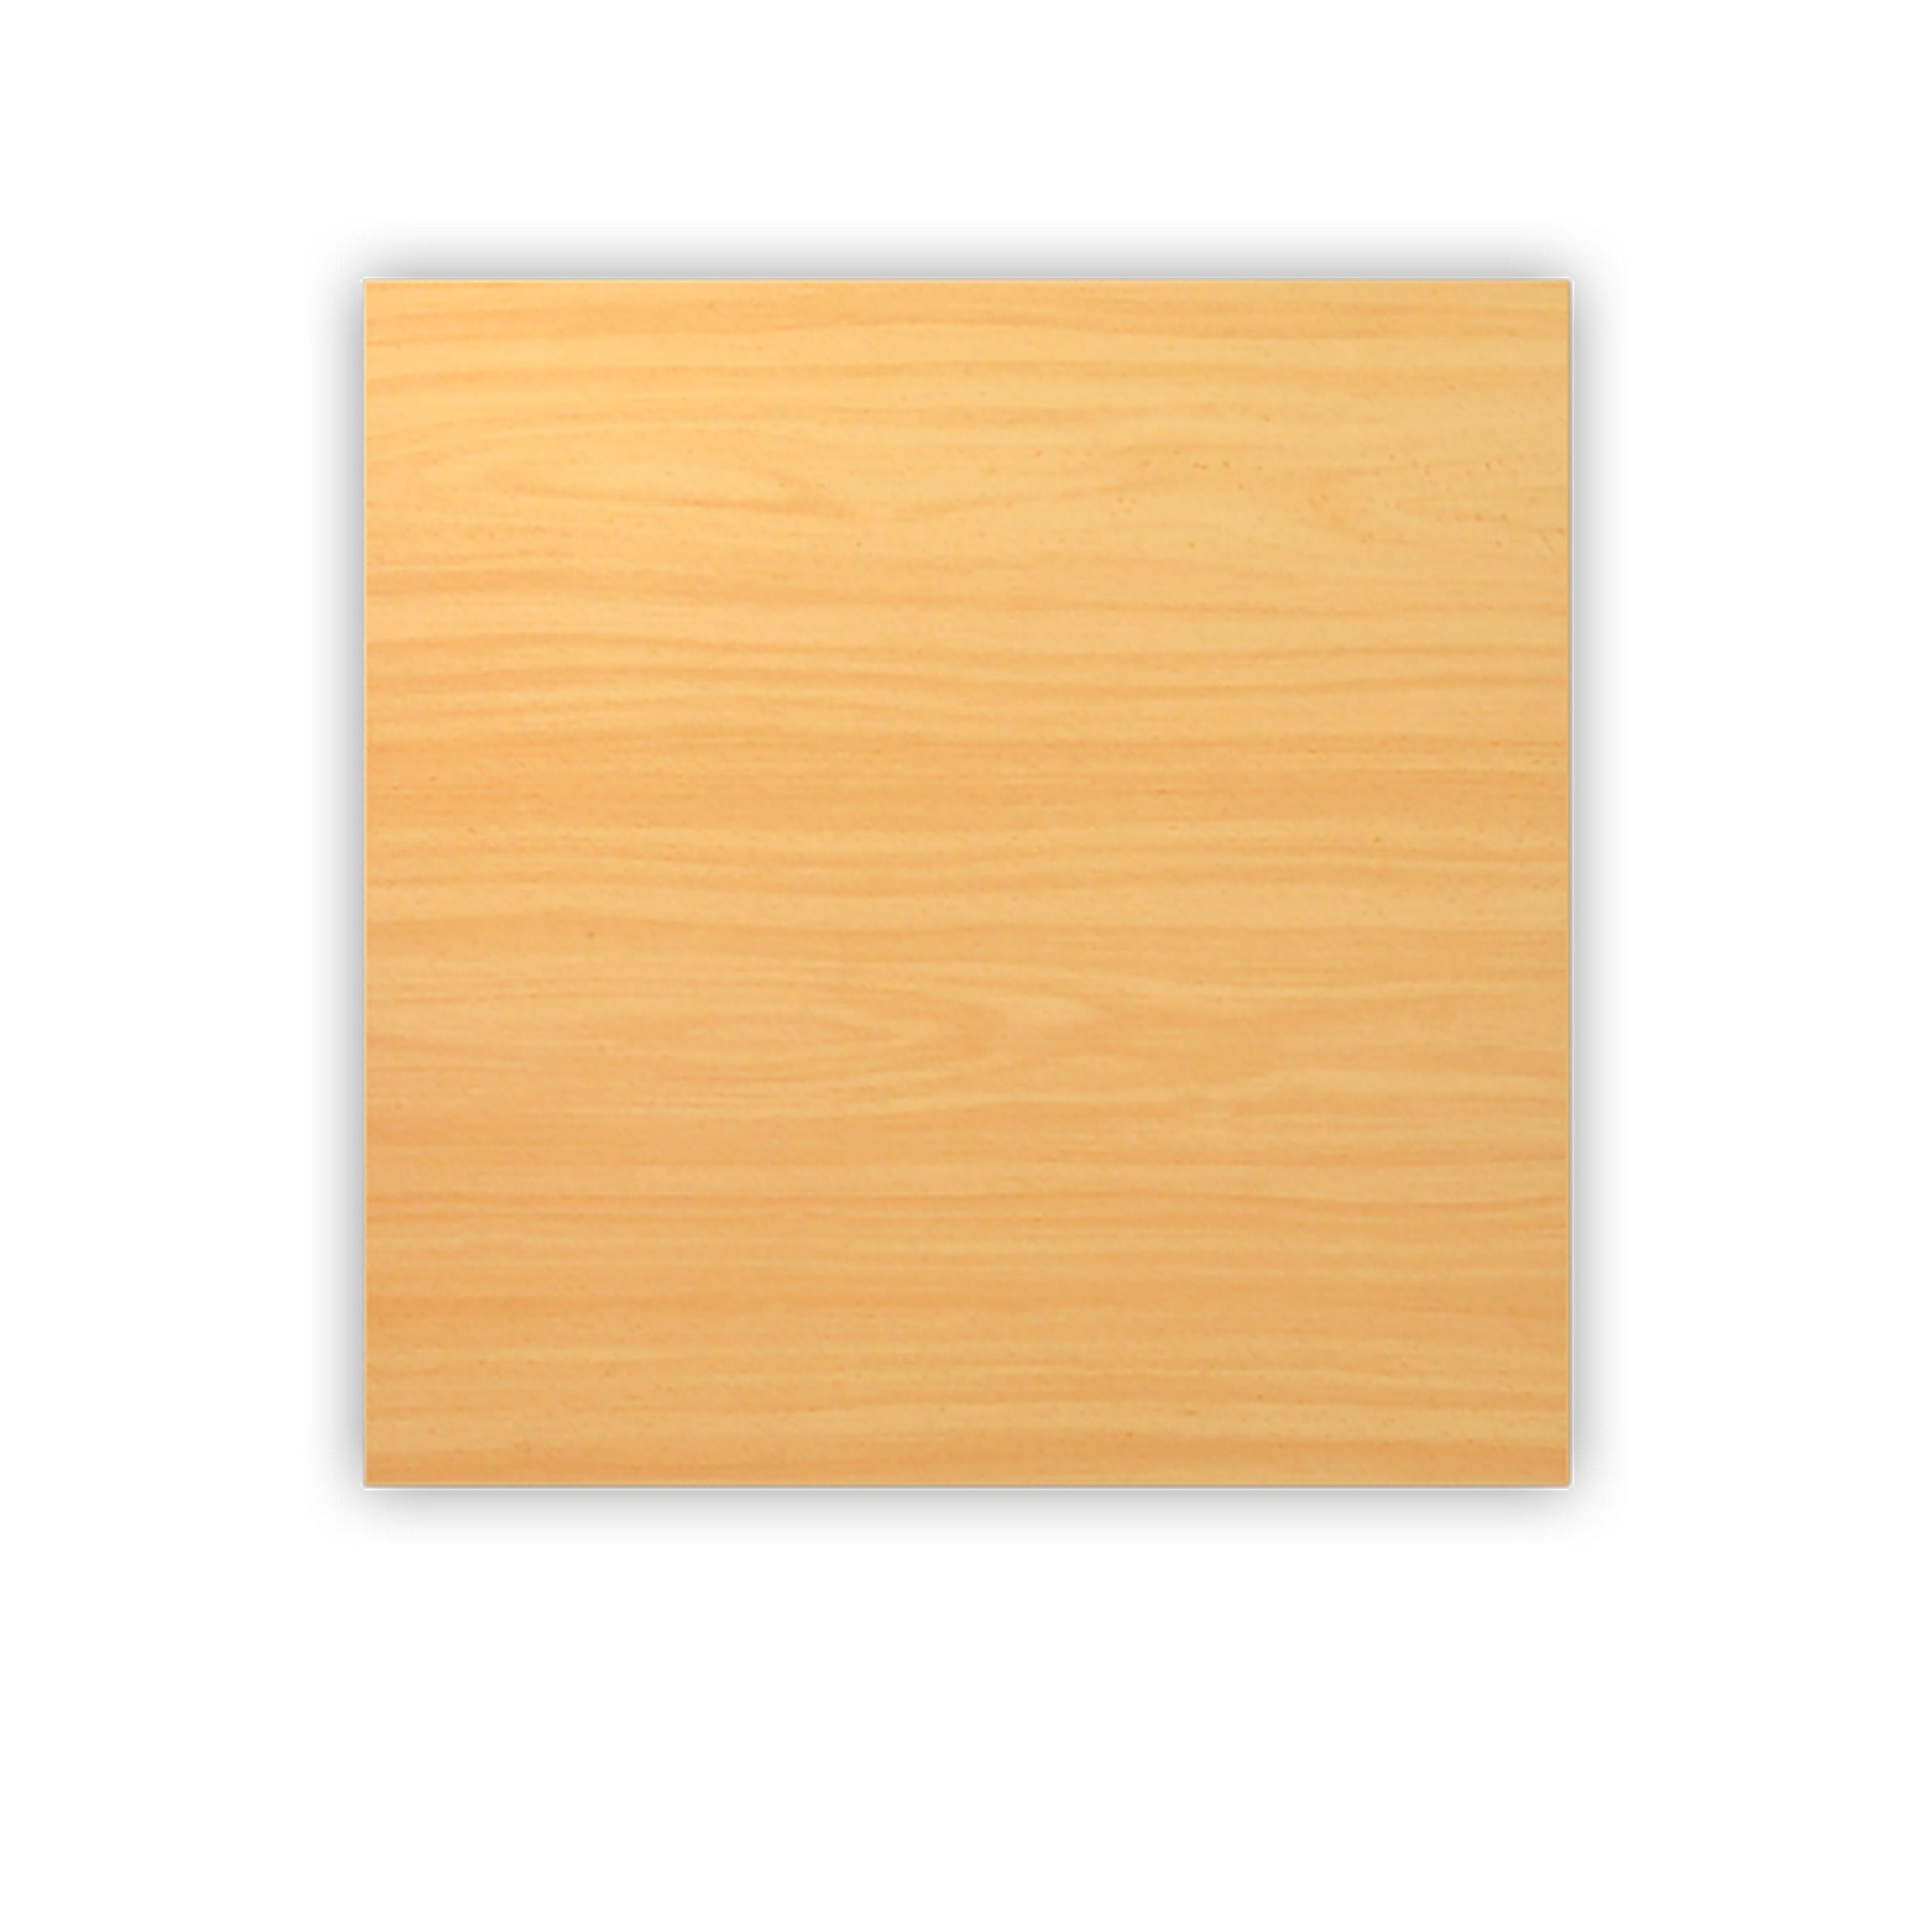 bümö Tischplatte DIY Schreibtischplatte, Quadrat: 80 x 80 cm- Dekor: Buche